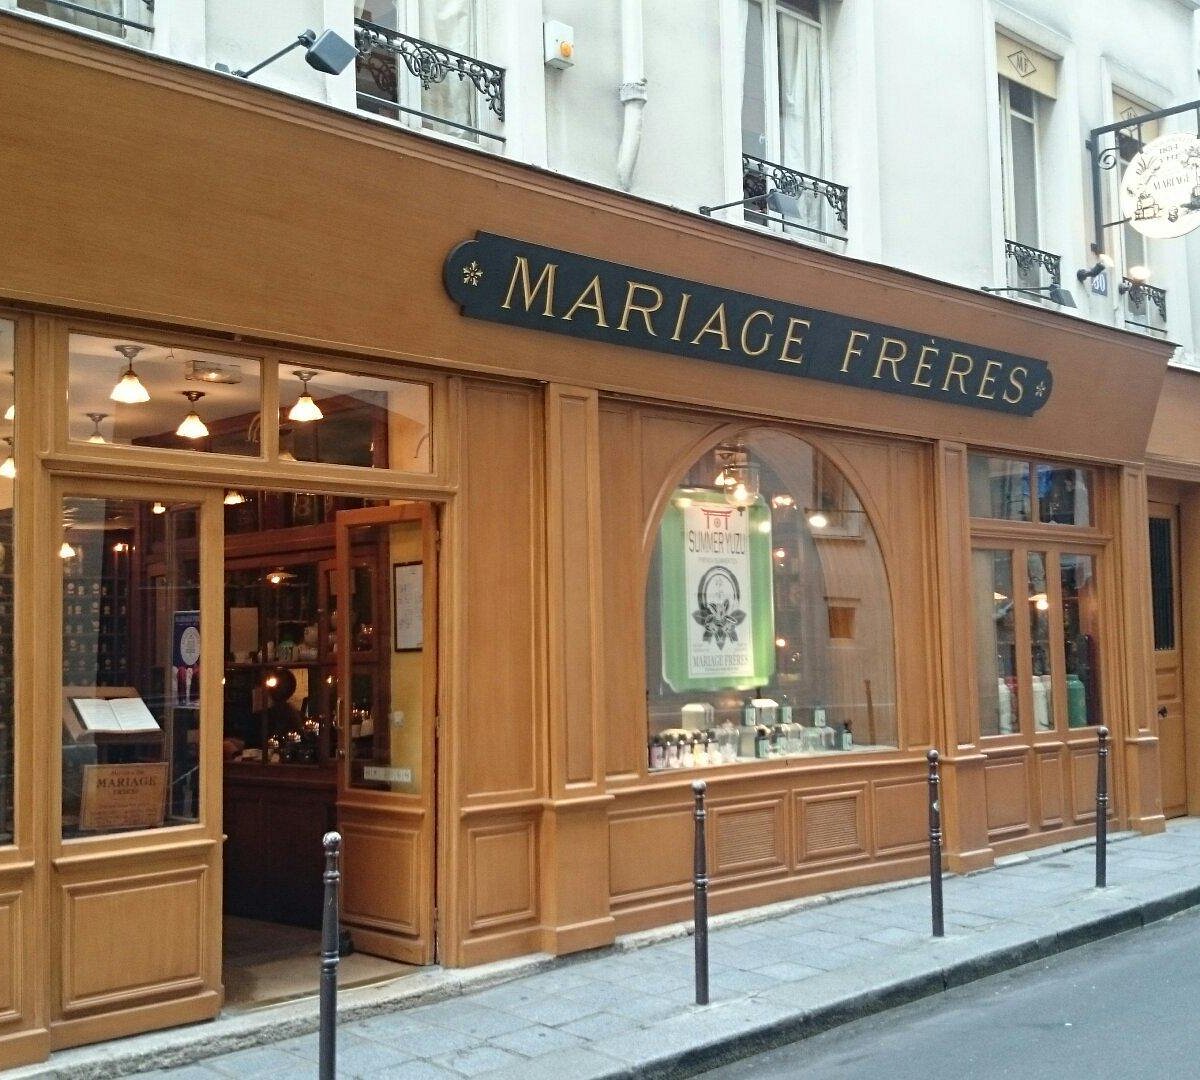 Mariage Freres - Picture of Mariage Freres, Paris - Tripadvisor